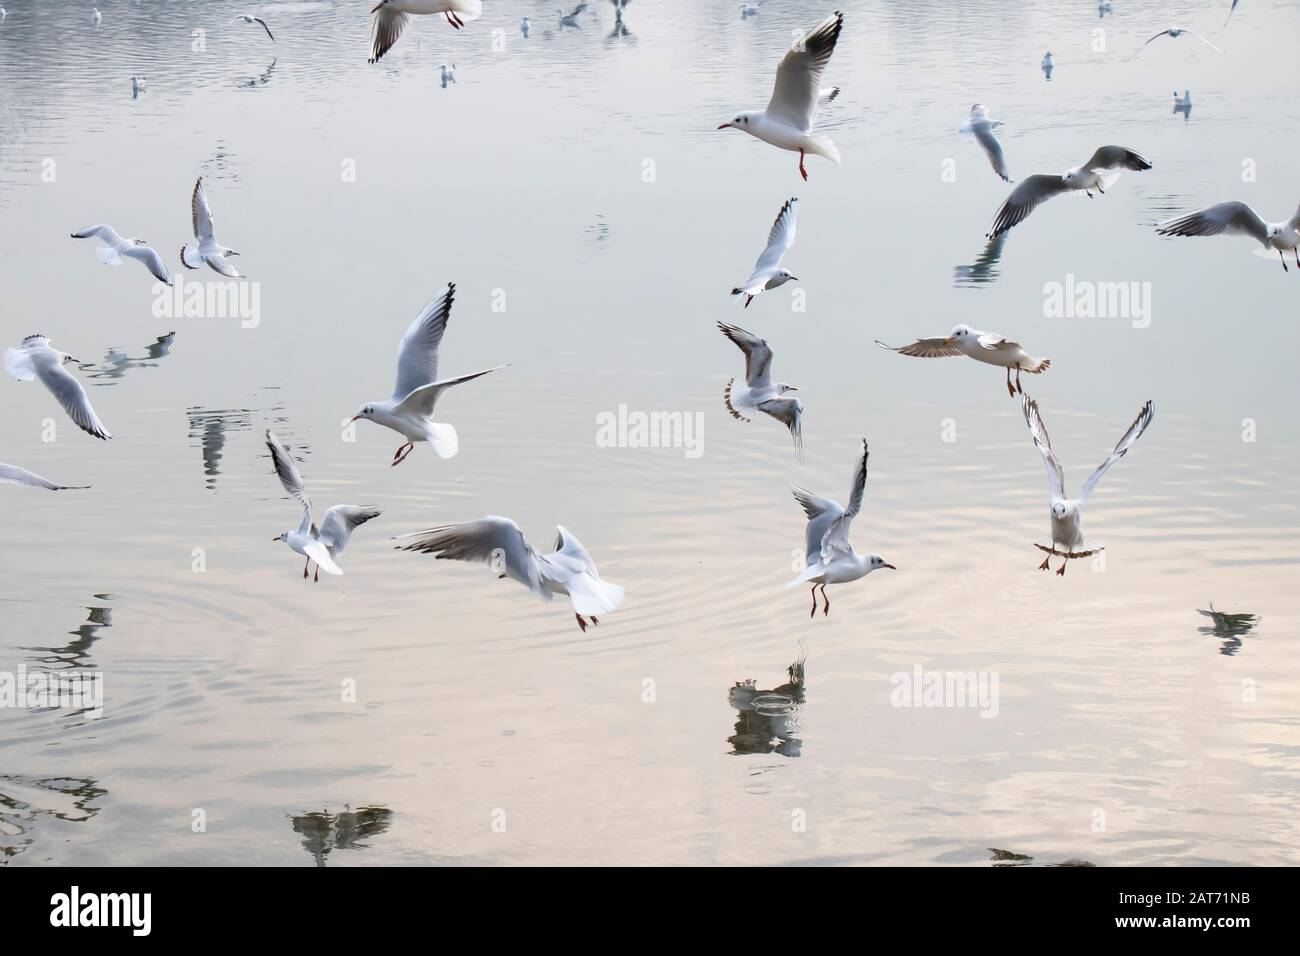 Gregge di gabbiani che volano sopra l'acqua in inverno, con riflessi e increspature Foto Stock